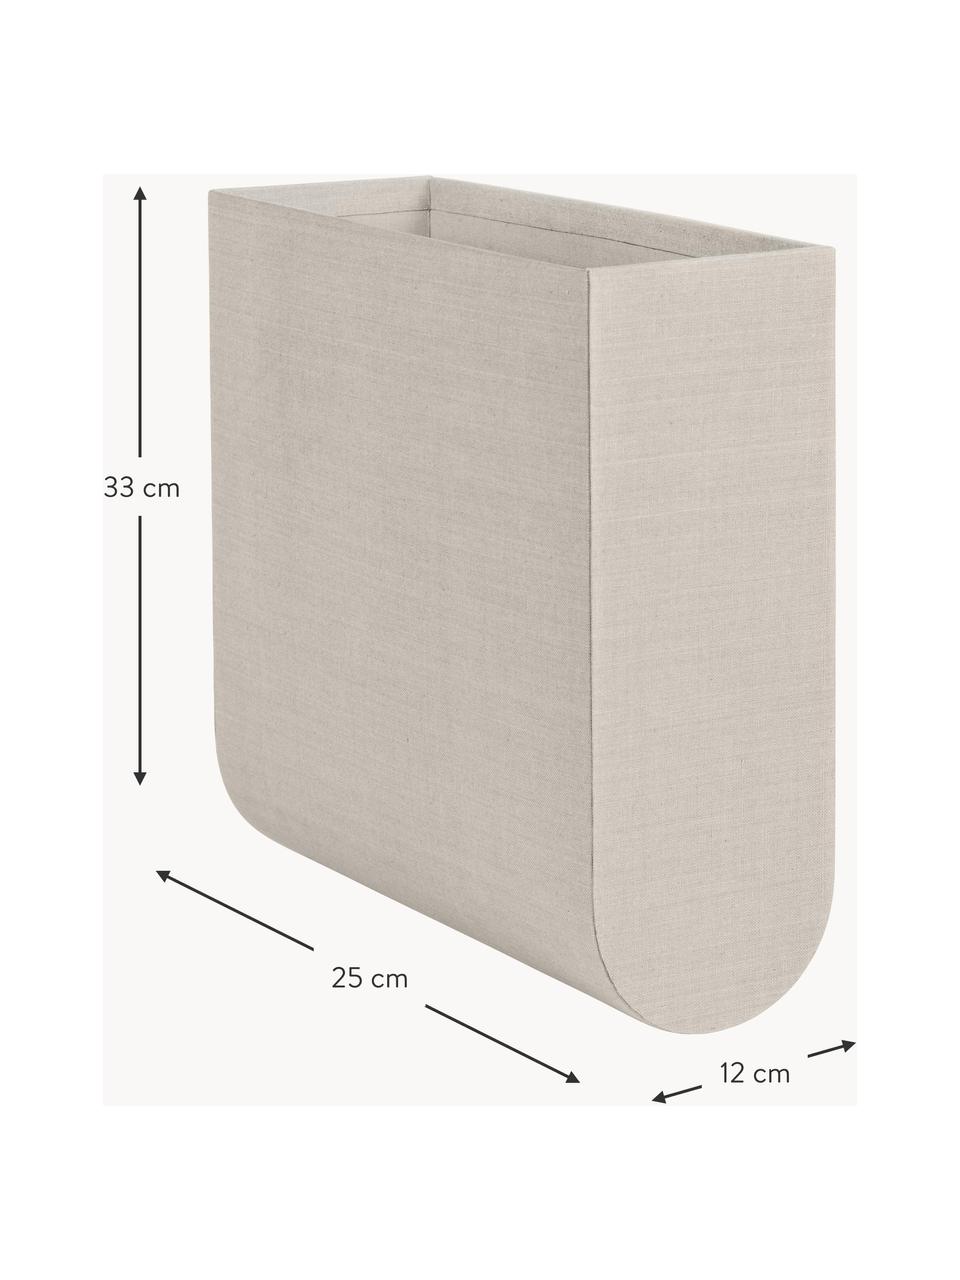 Handgefertigte Aufbewahrungsbox Curved, B 12 cm, Bezug: 100 % Baumwolle, Korpus: Pappe, Hellbeige, B 12 x H 33 cm